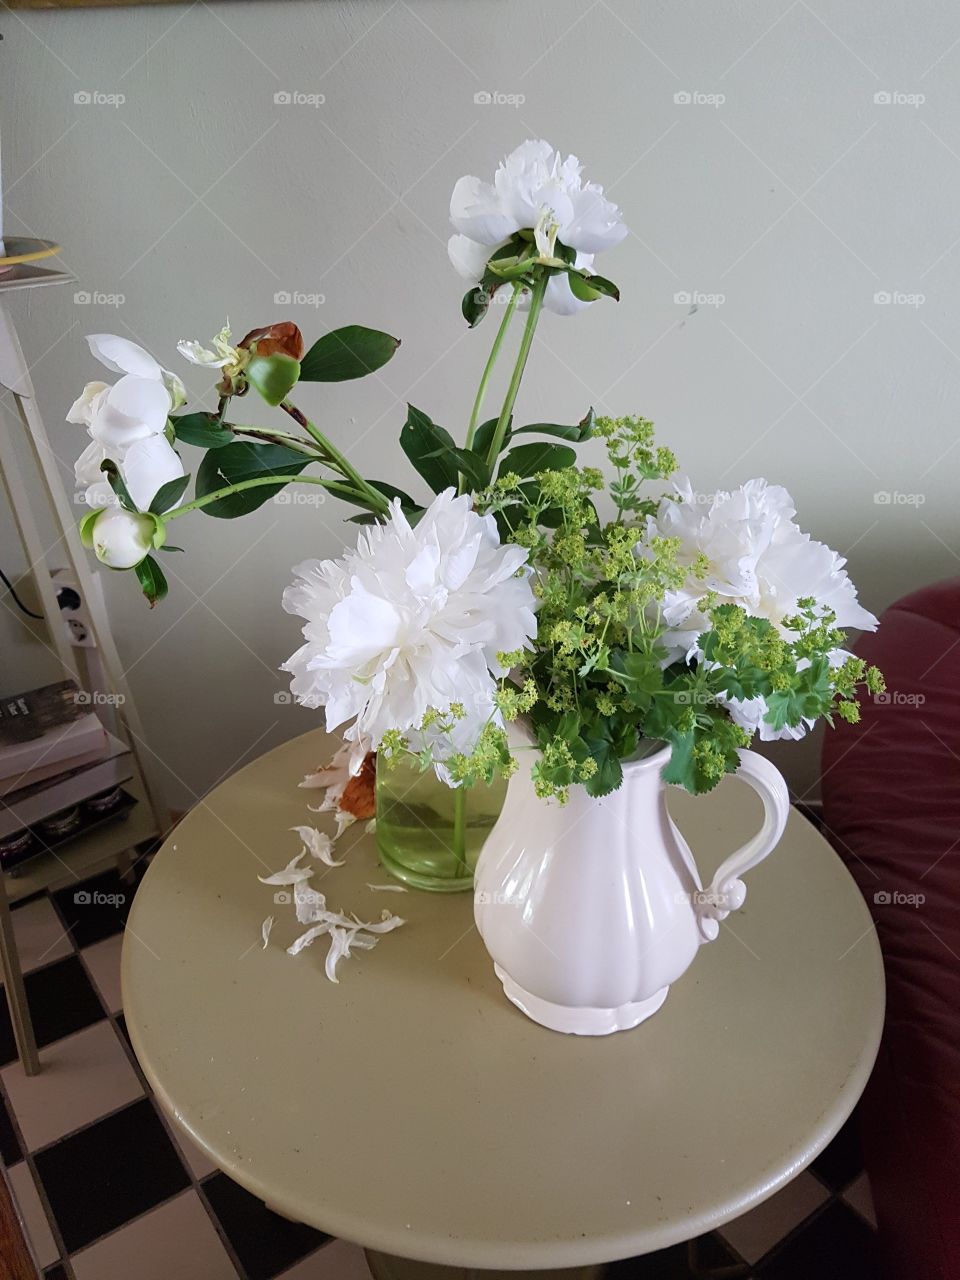 Peony flowers in antique vase